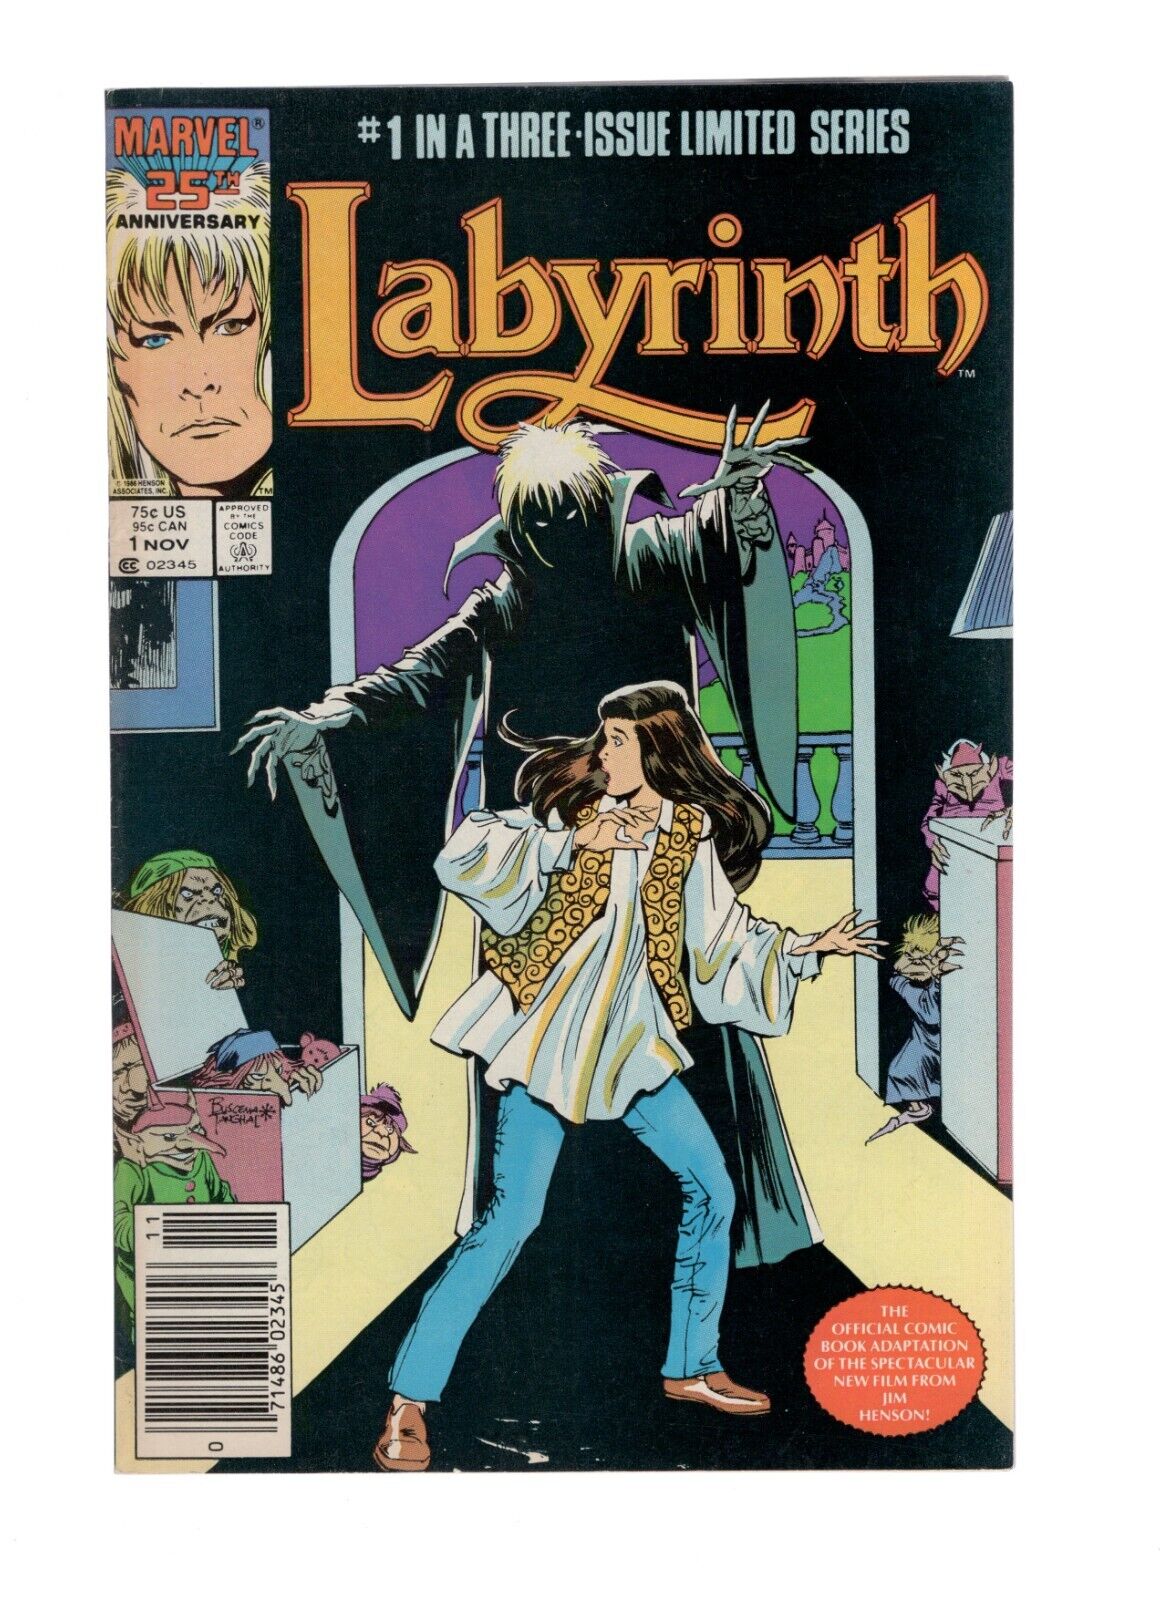 Labyrinth #1 - Newsstand - David Bowie - Marvel Comics 1986 - Higher Grade